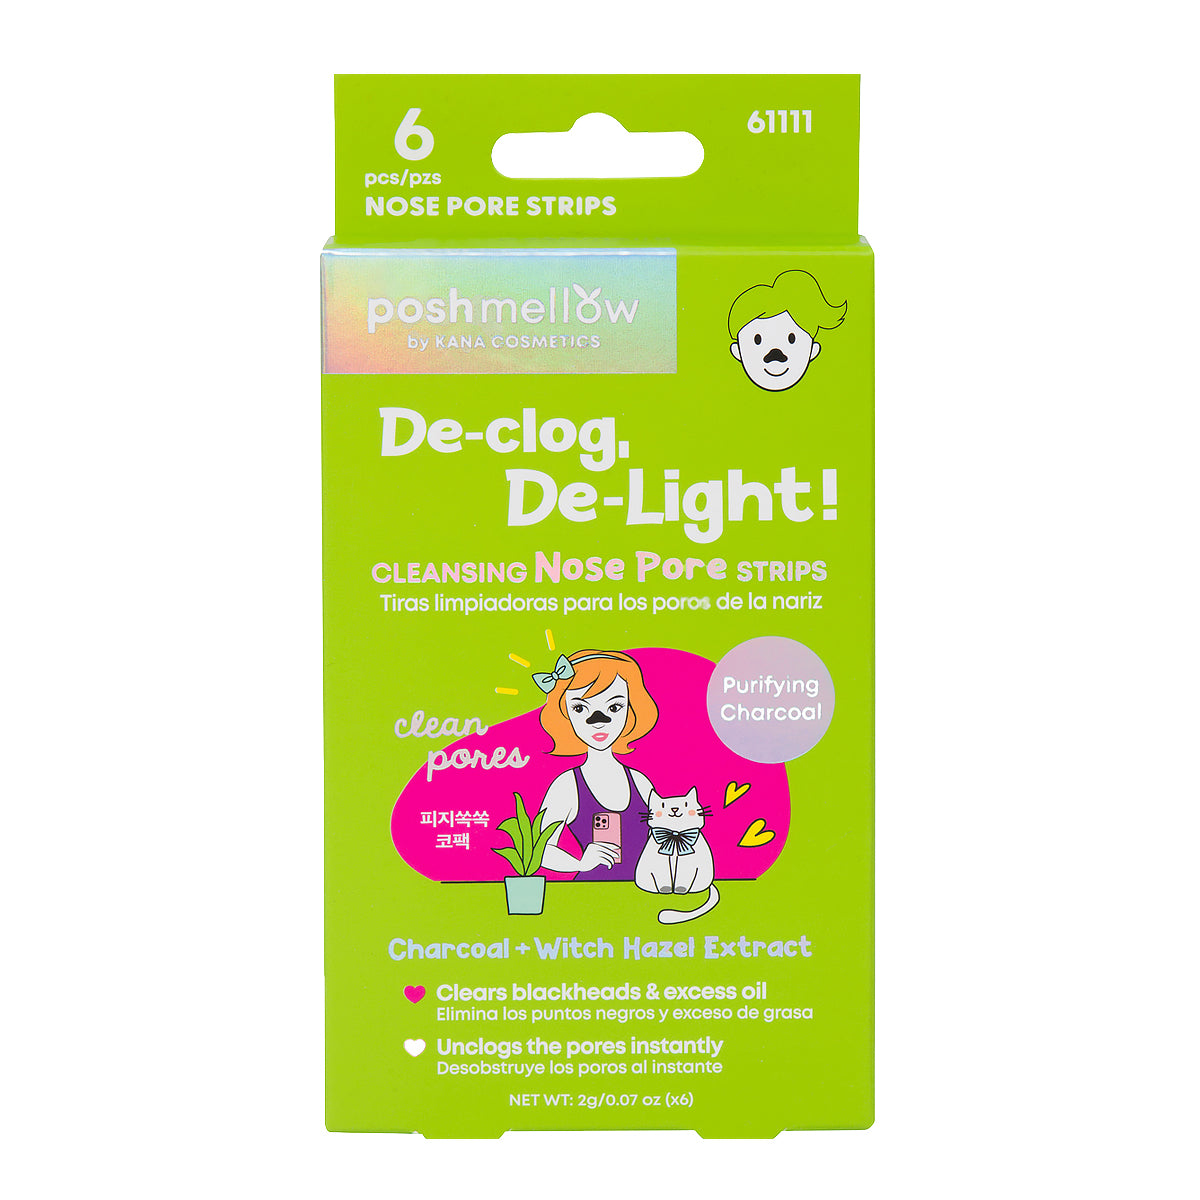 De-Clog, De-Light! Cleansing Nose Pore Strips (6 pcs)